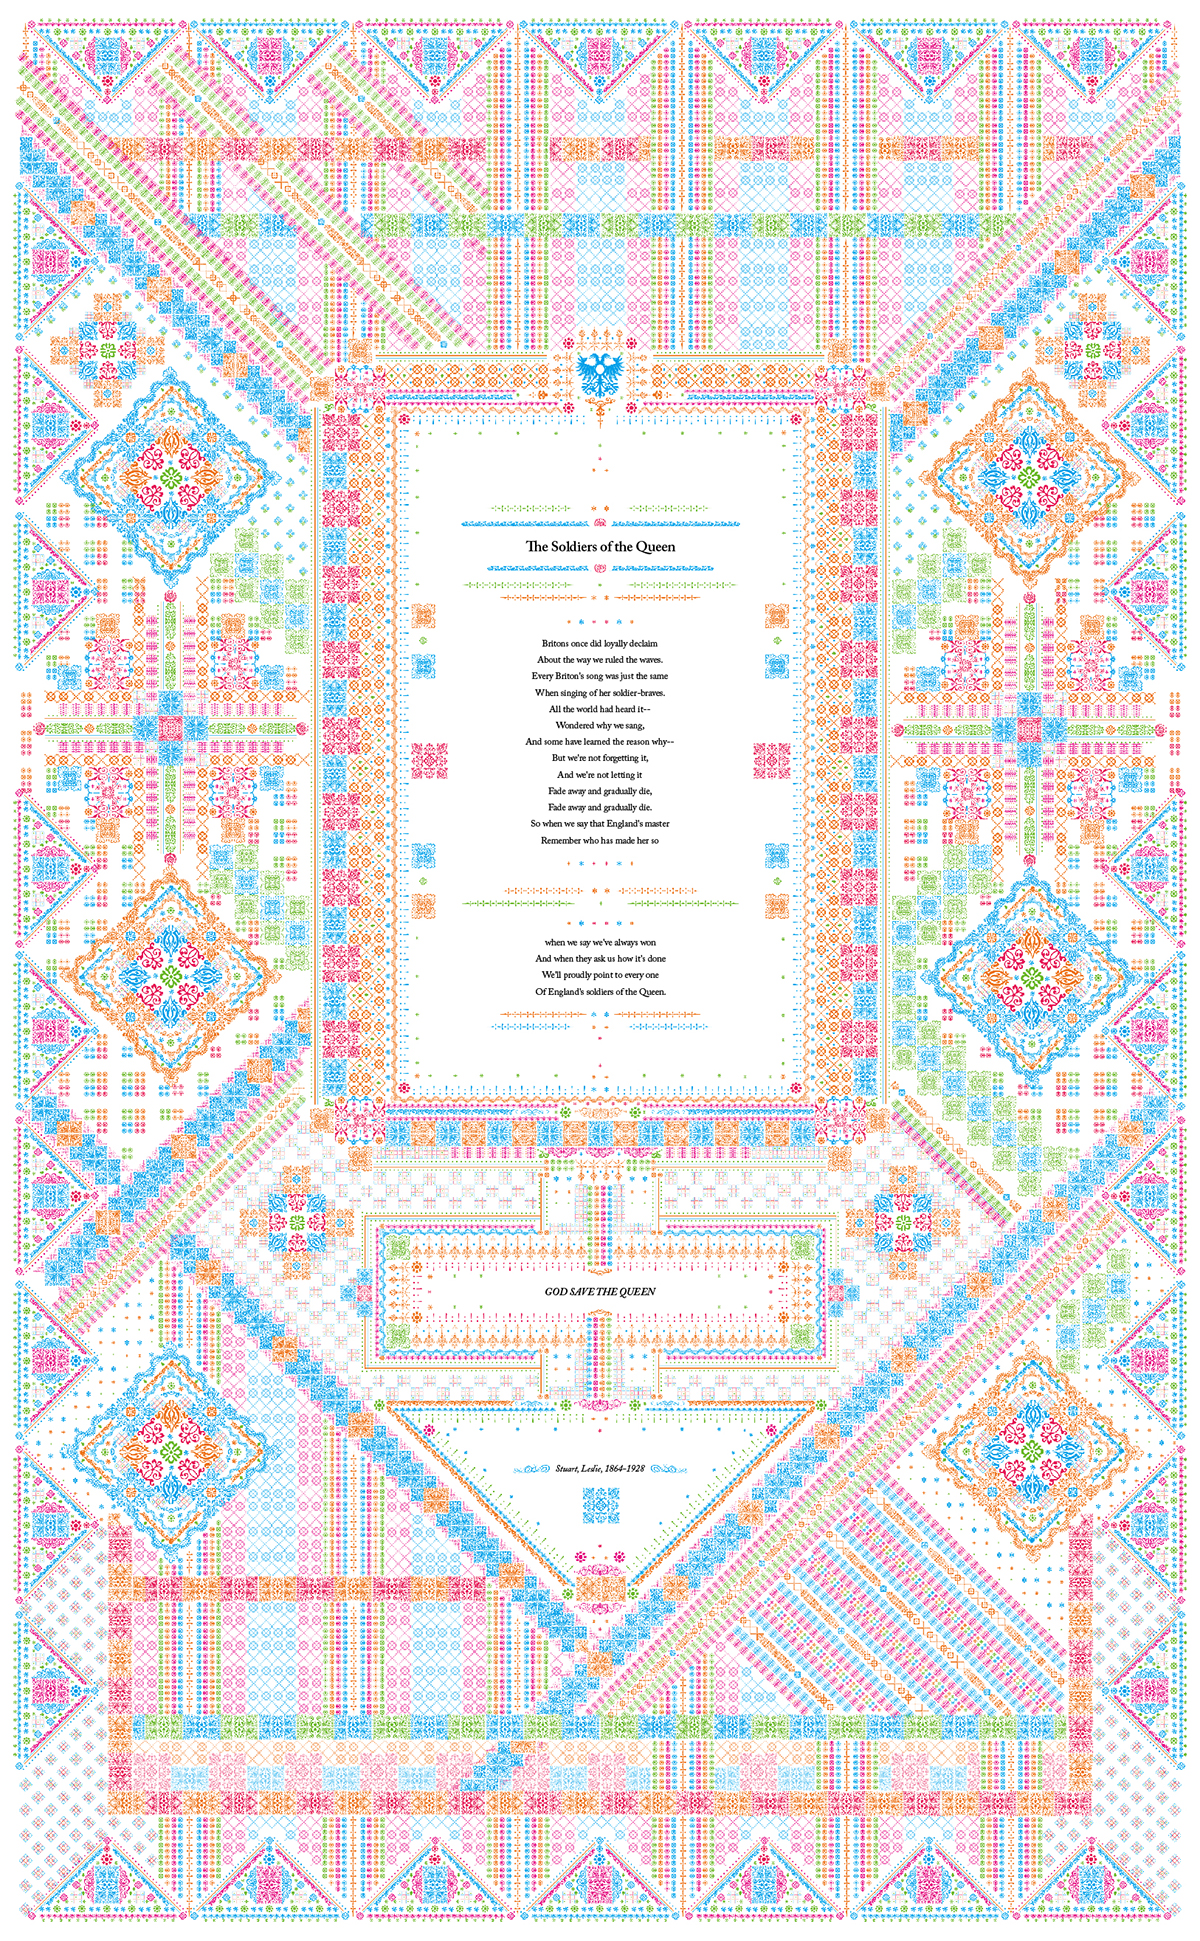 ornament composition elements combination graphic poster Caslon glyphs grid pattern